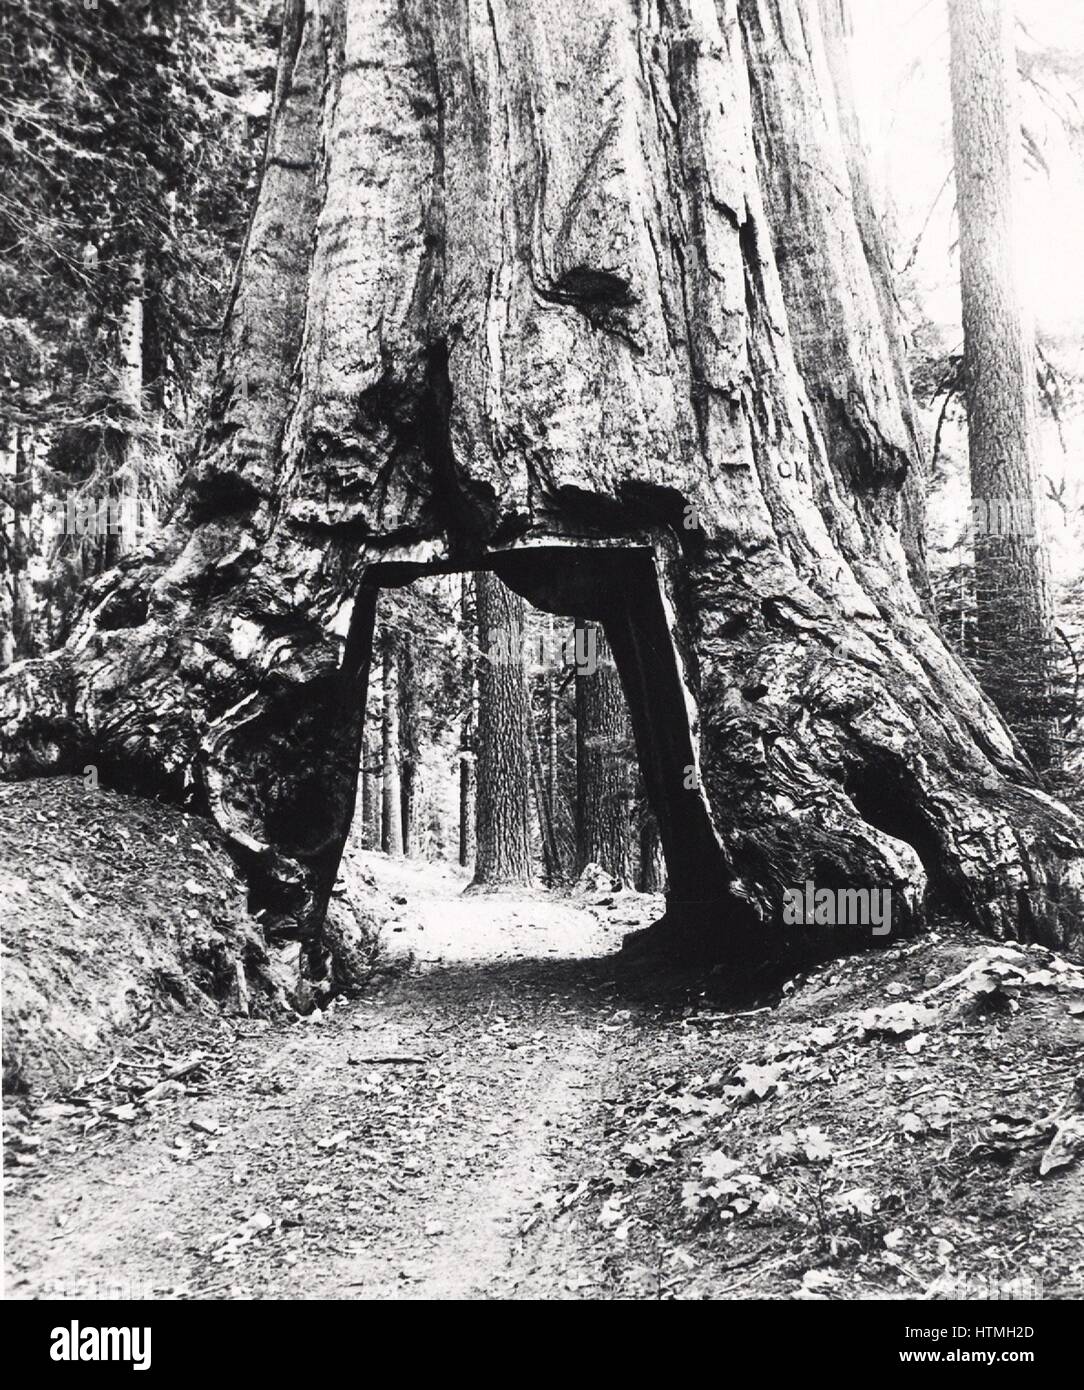 Par la route à travers le tronc d'un séquoia de Californie étant donné le nom. Wawona Diamètre de tronc 8.53m (28 pi) et la hauteur de 144.78m (275 ft). Photographie c1893. Banque D'Images